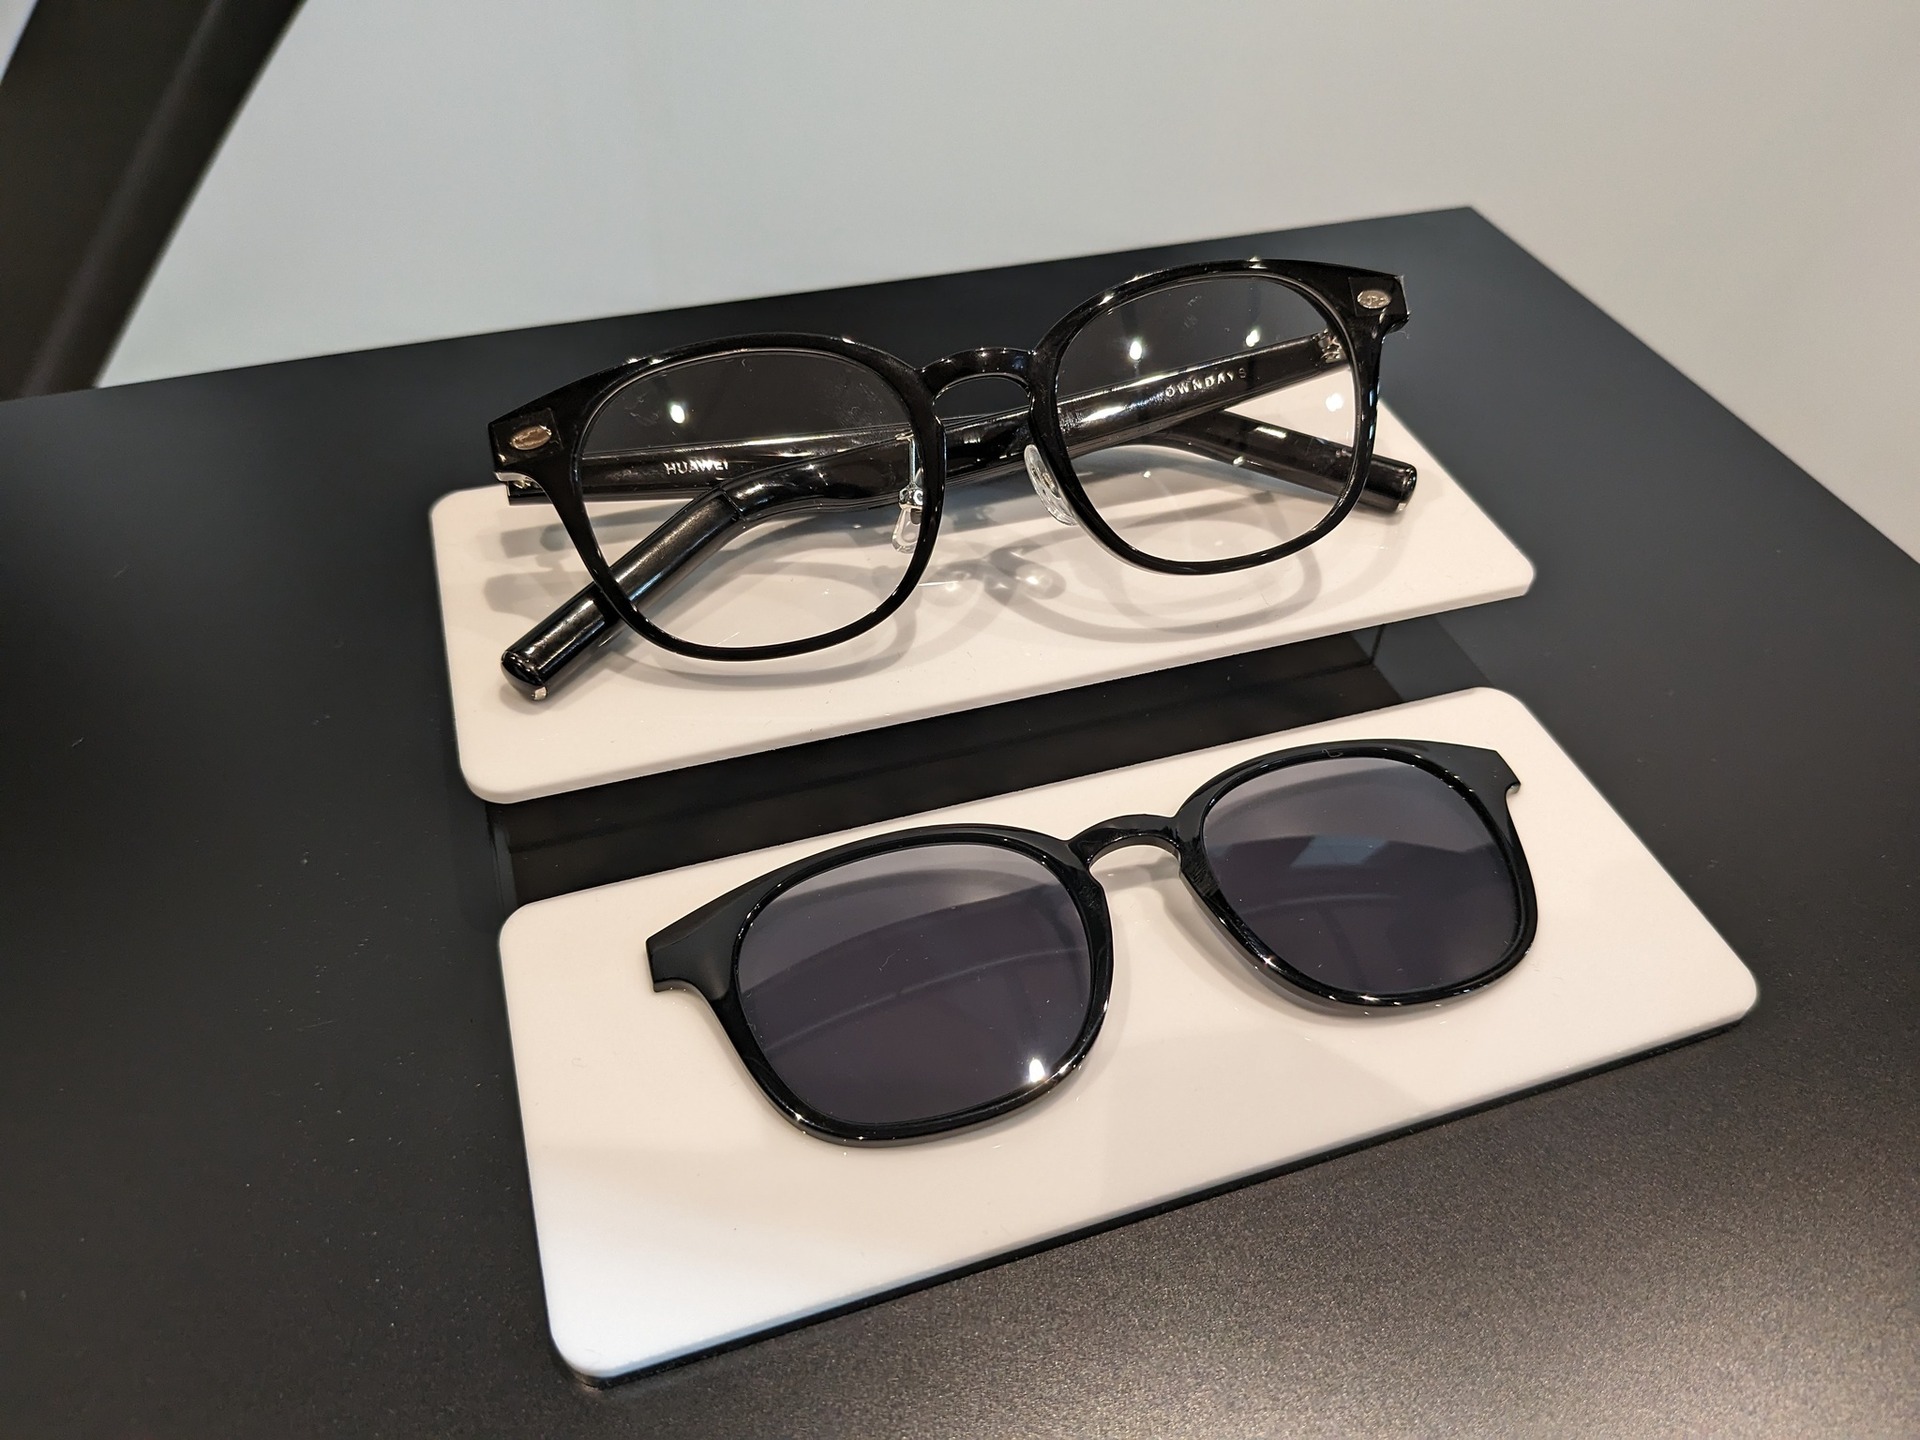 聴こえるメガネ HUAWEI Eyewear 2、OWNDAYSモデル発売。4スタイルx2色 